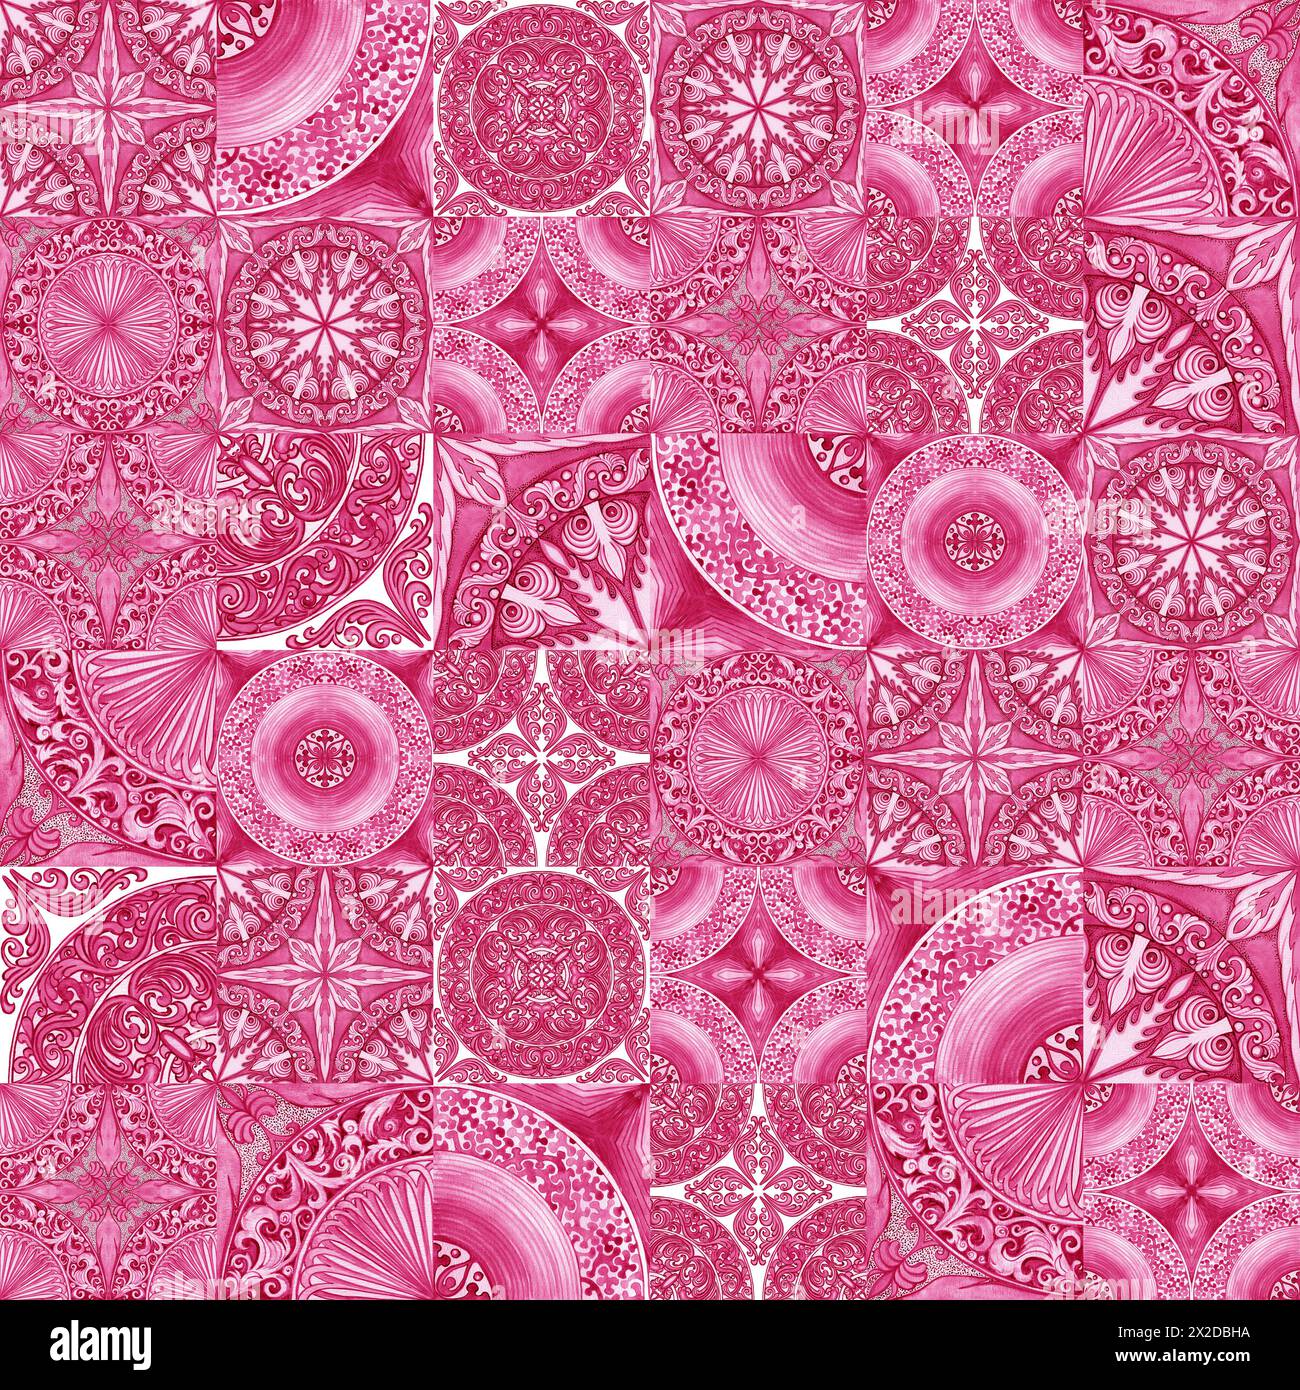 Gestaltung von Keramikfliesen in rosa Tönen. Sizilianisches nahtloses Muster. Aquarellhintergrund im Barockstil. Handgefertigte königliche Dekoration. Italien Im Mittelmeerraum Stockfoto